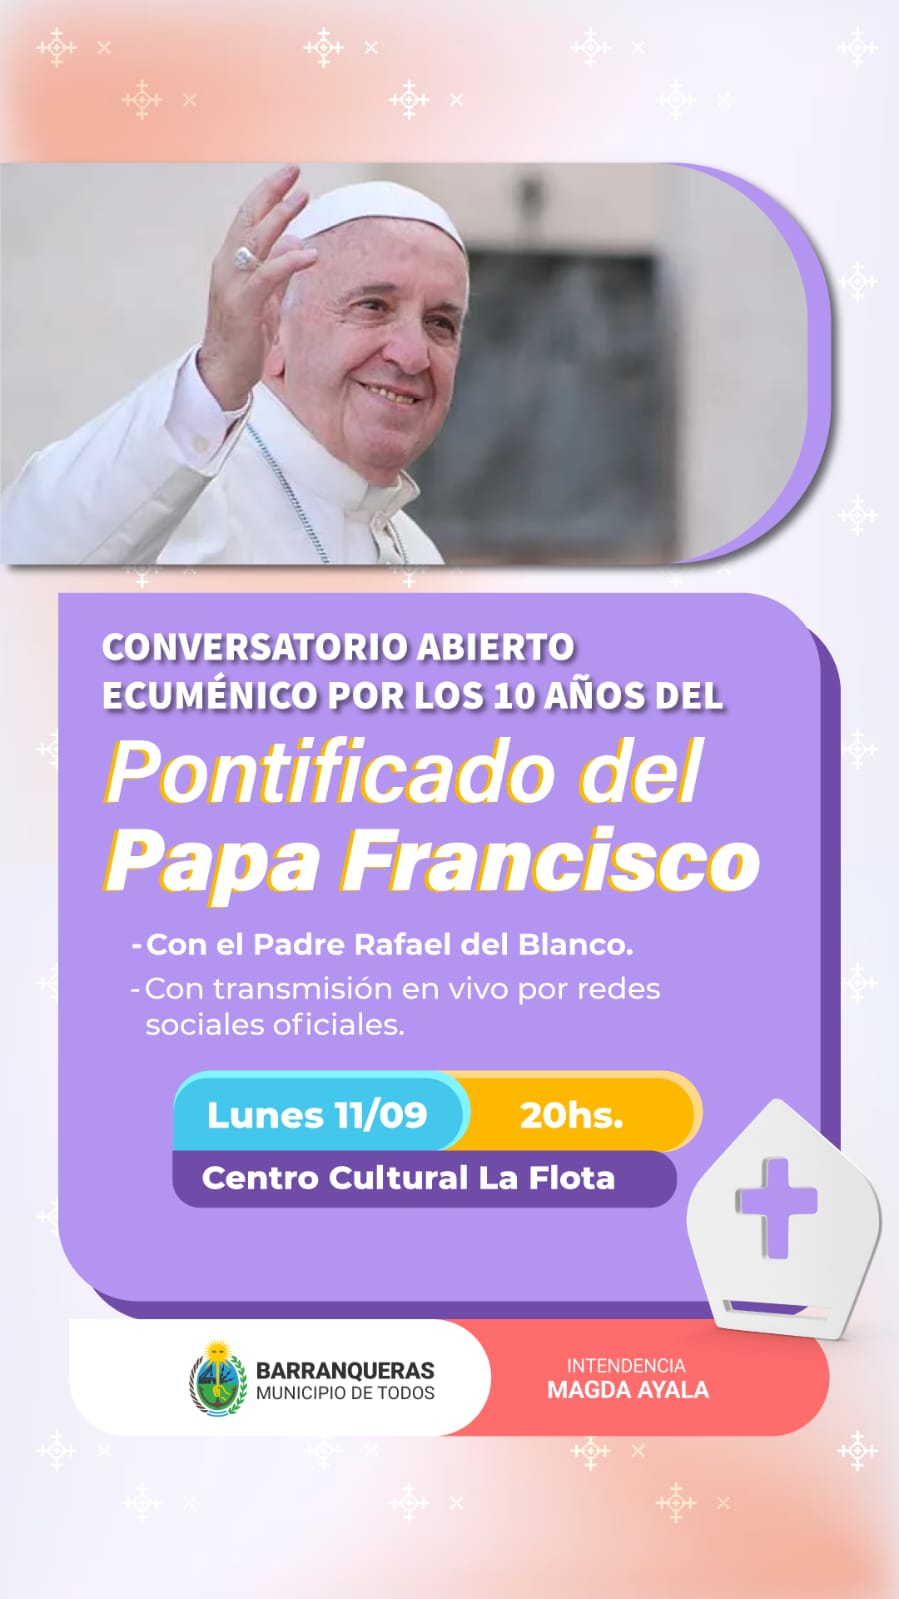 Barranqueras honrará el aniversario del Pontificado de Papa Francisco 